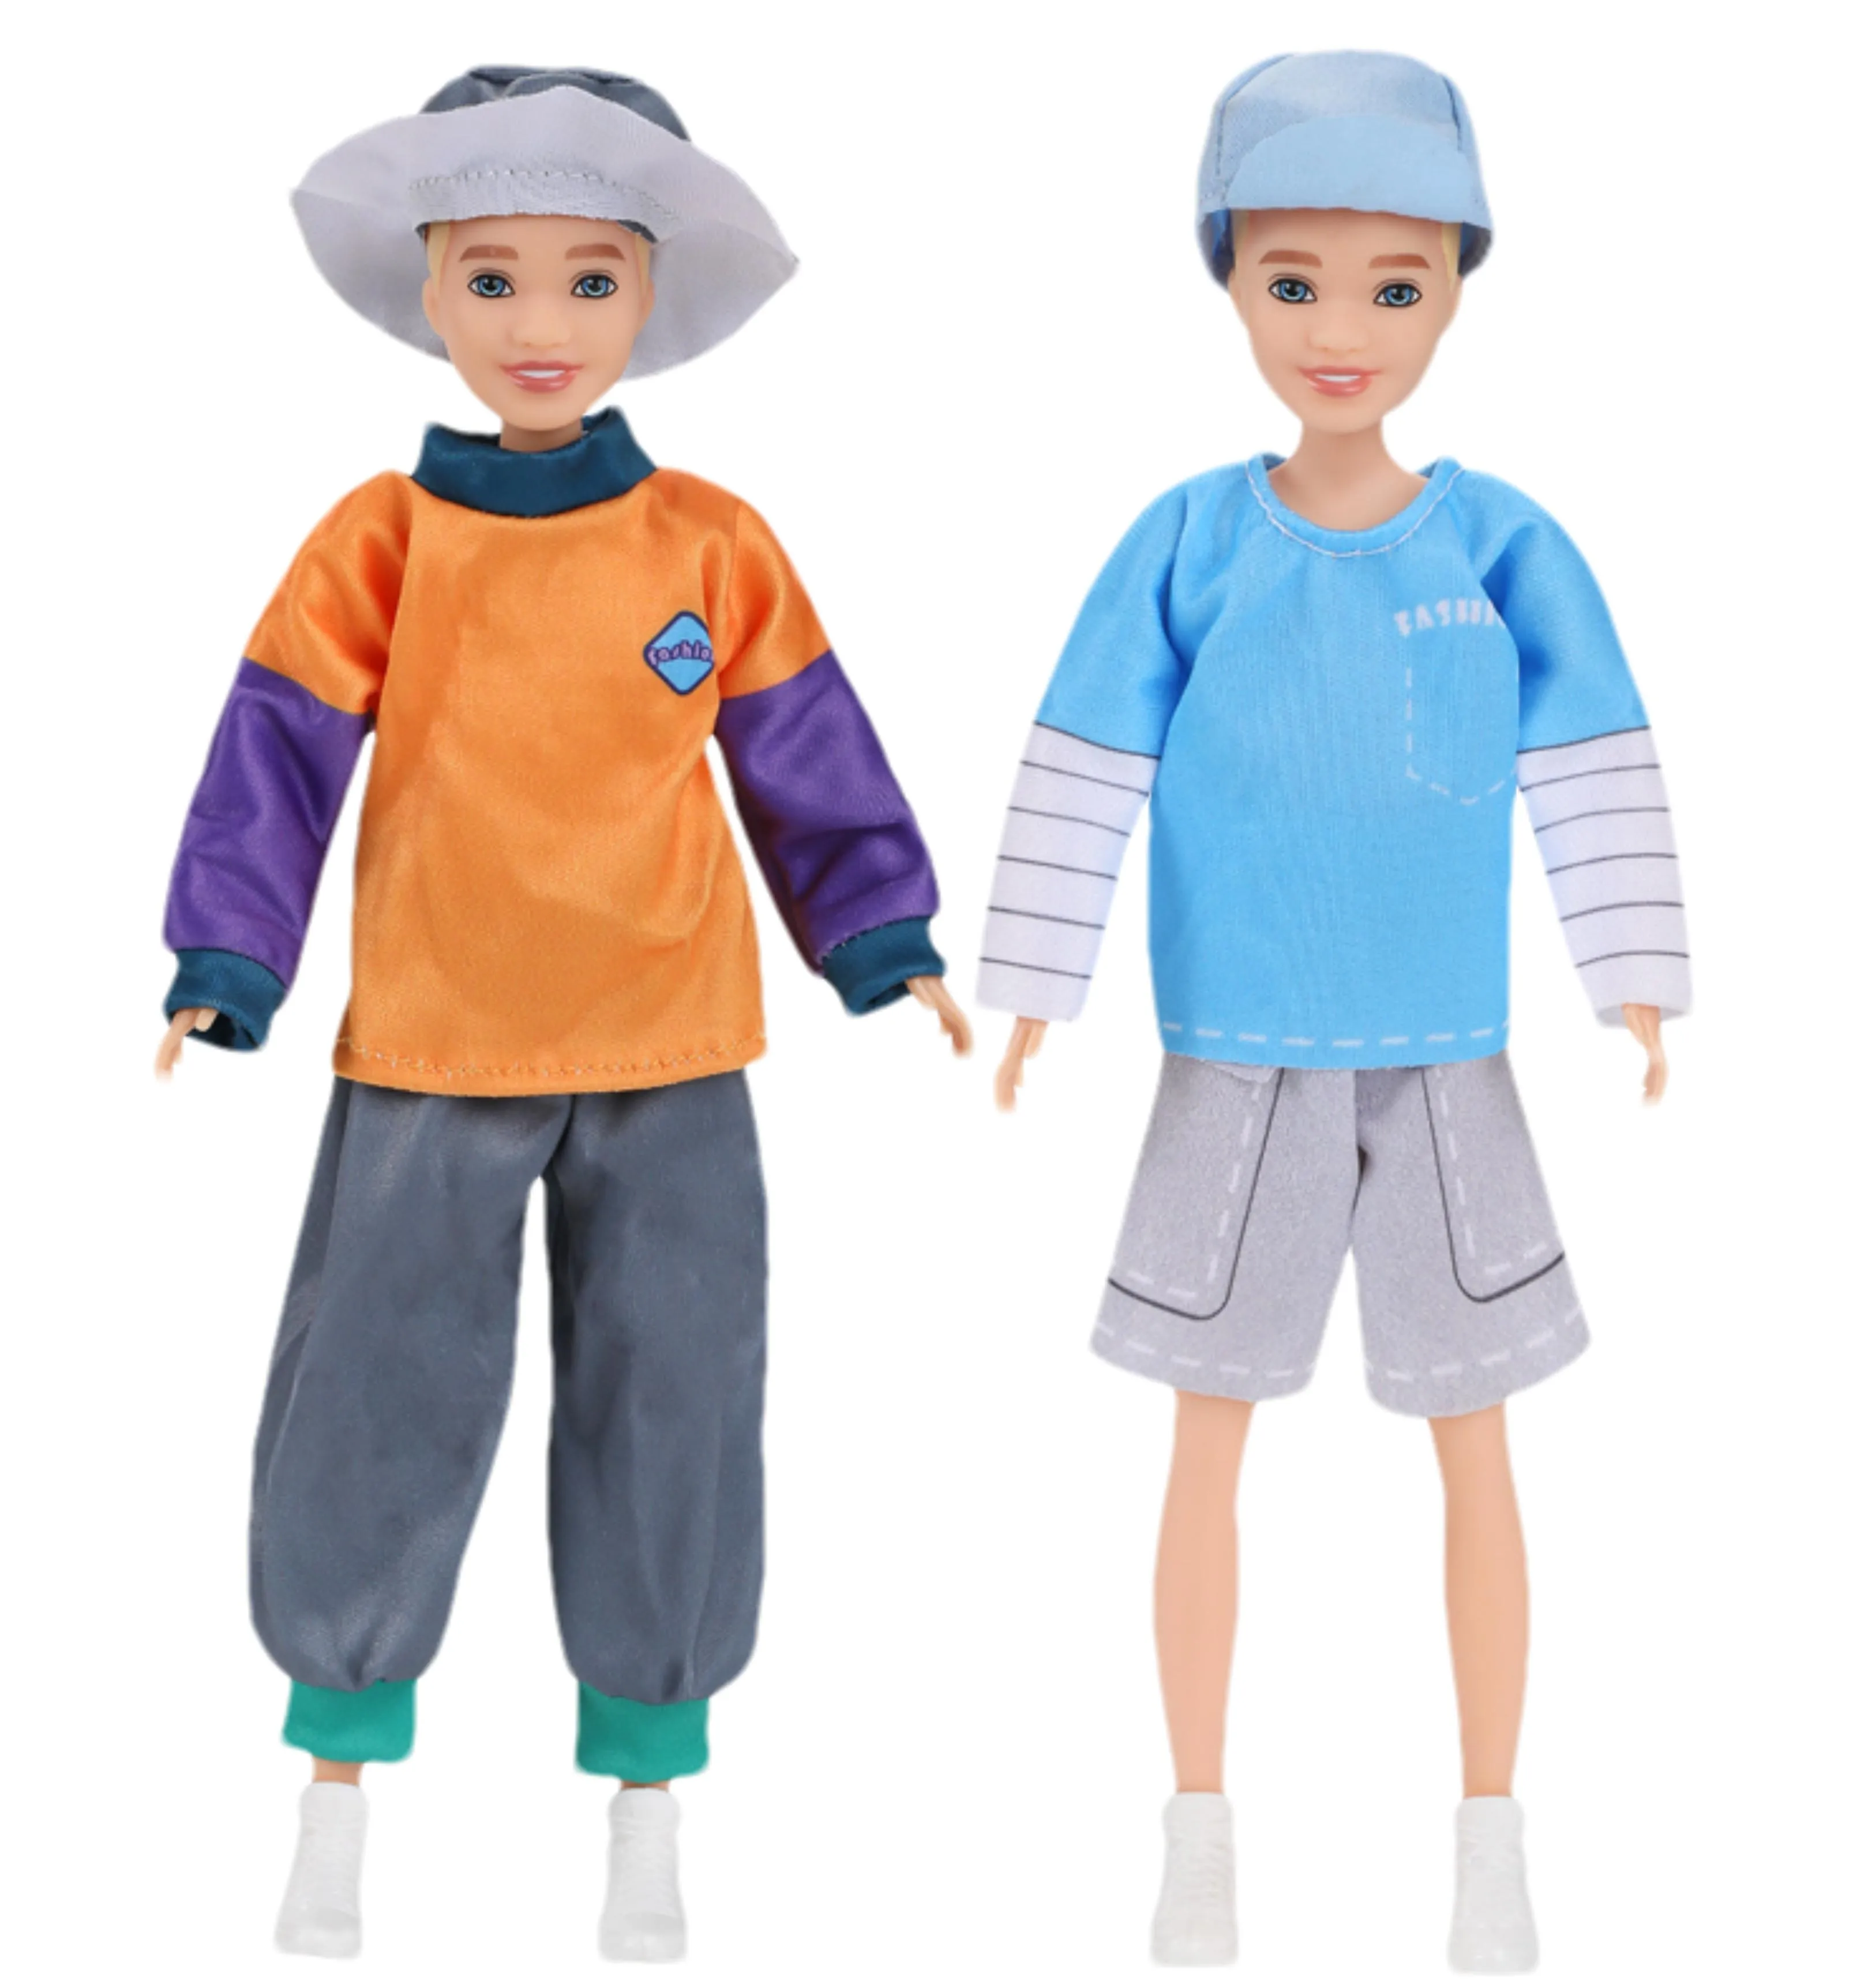 Nuovi abbigliamento per il set da 23 cm da maschile da 23 cm di bambola maschile e pantaloni accessori per bambole giocattolo per bambini